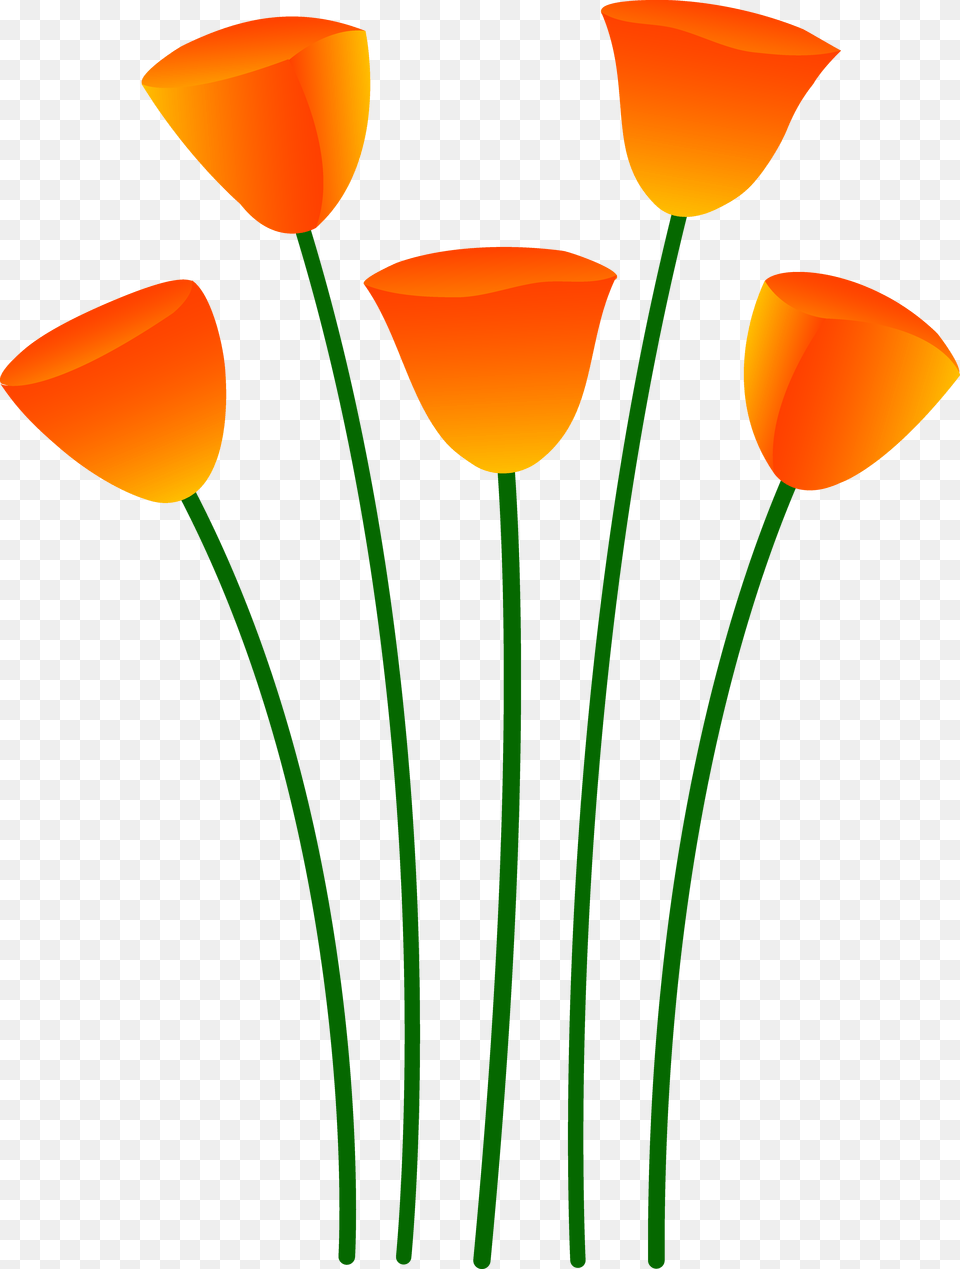 Free Clip Art, Flower, Petal, Plant, Bow Png Image